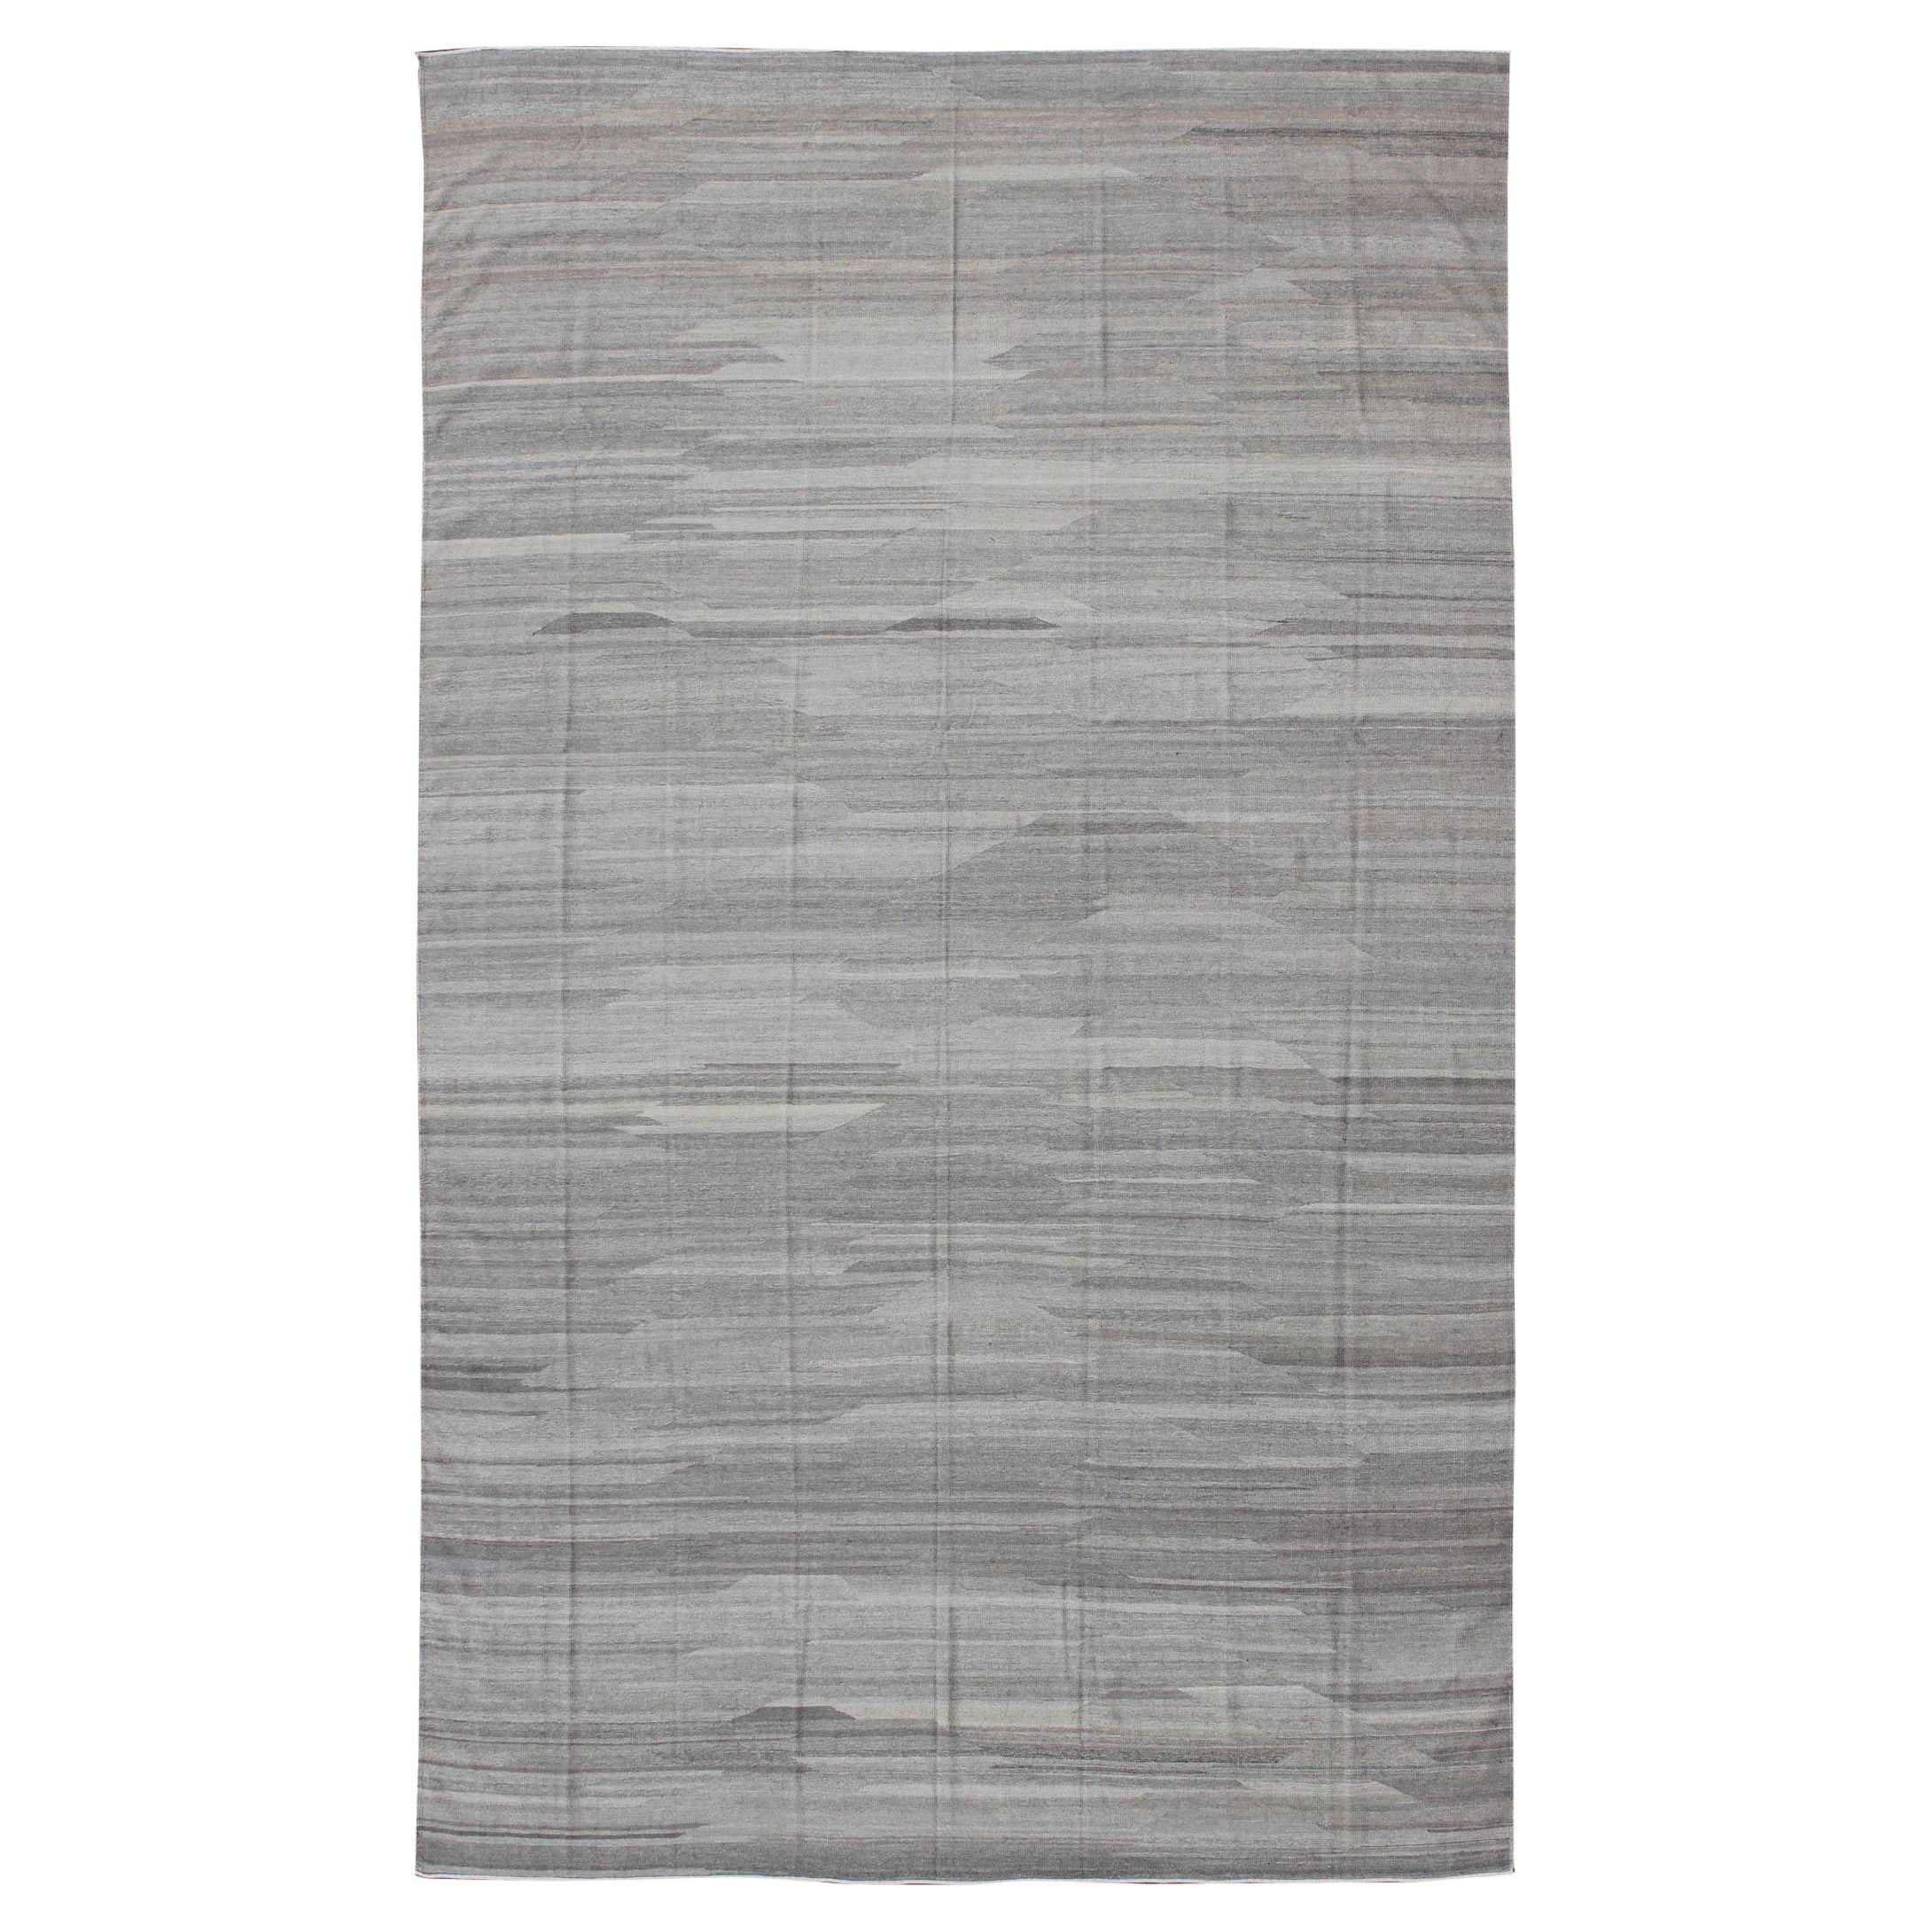 Très grand Kilim moderne avec un design minimaliste massif dans une variation des tons gris